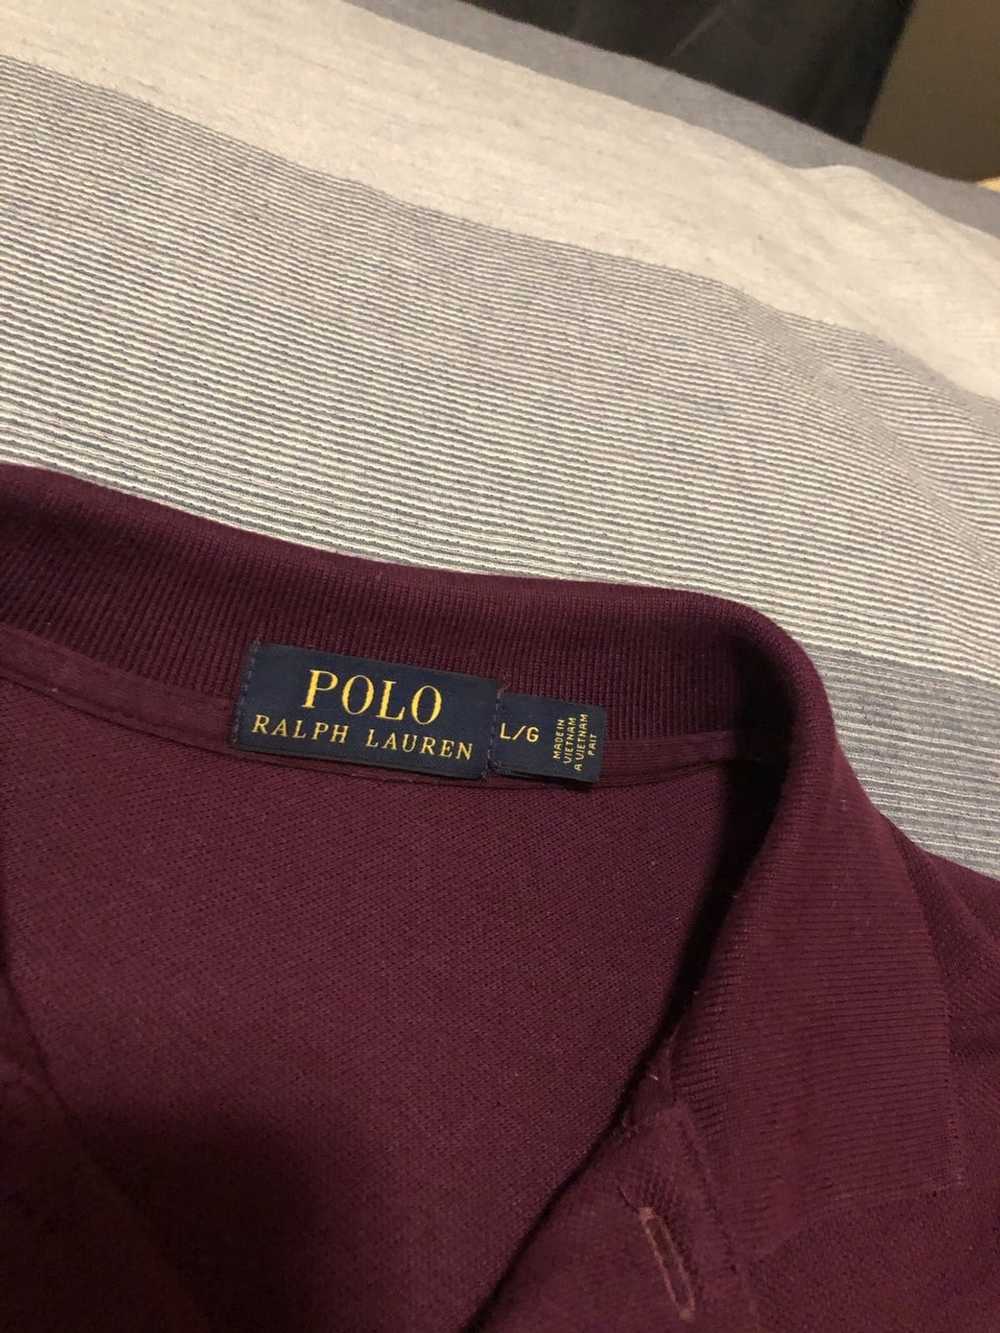 Polo Ralph Lauren Polo Ralph Lauren Polo - image 3